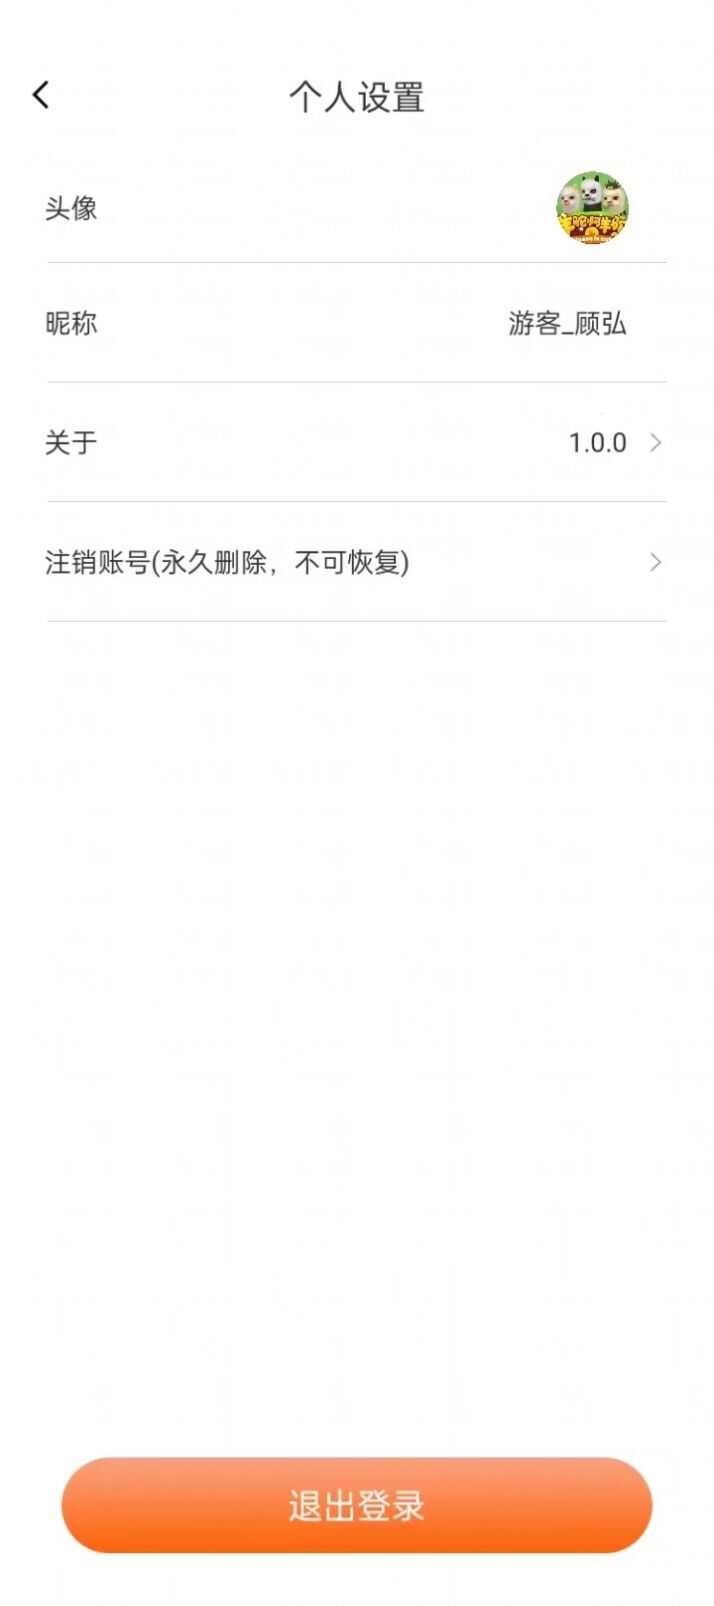 菁菁教育官方版下载app图片1